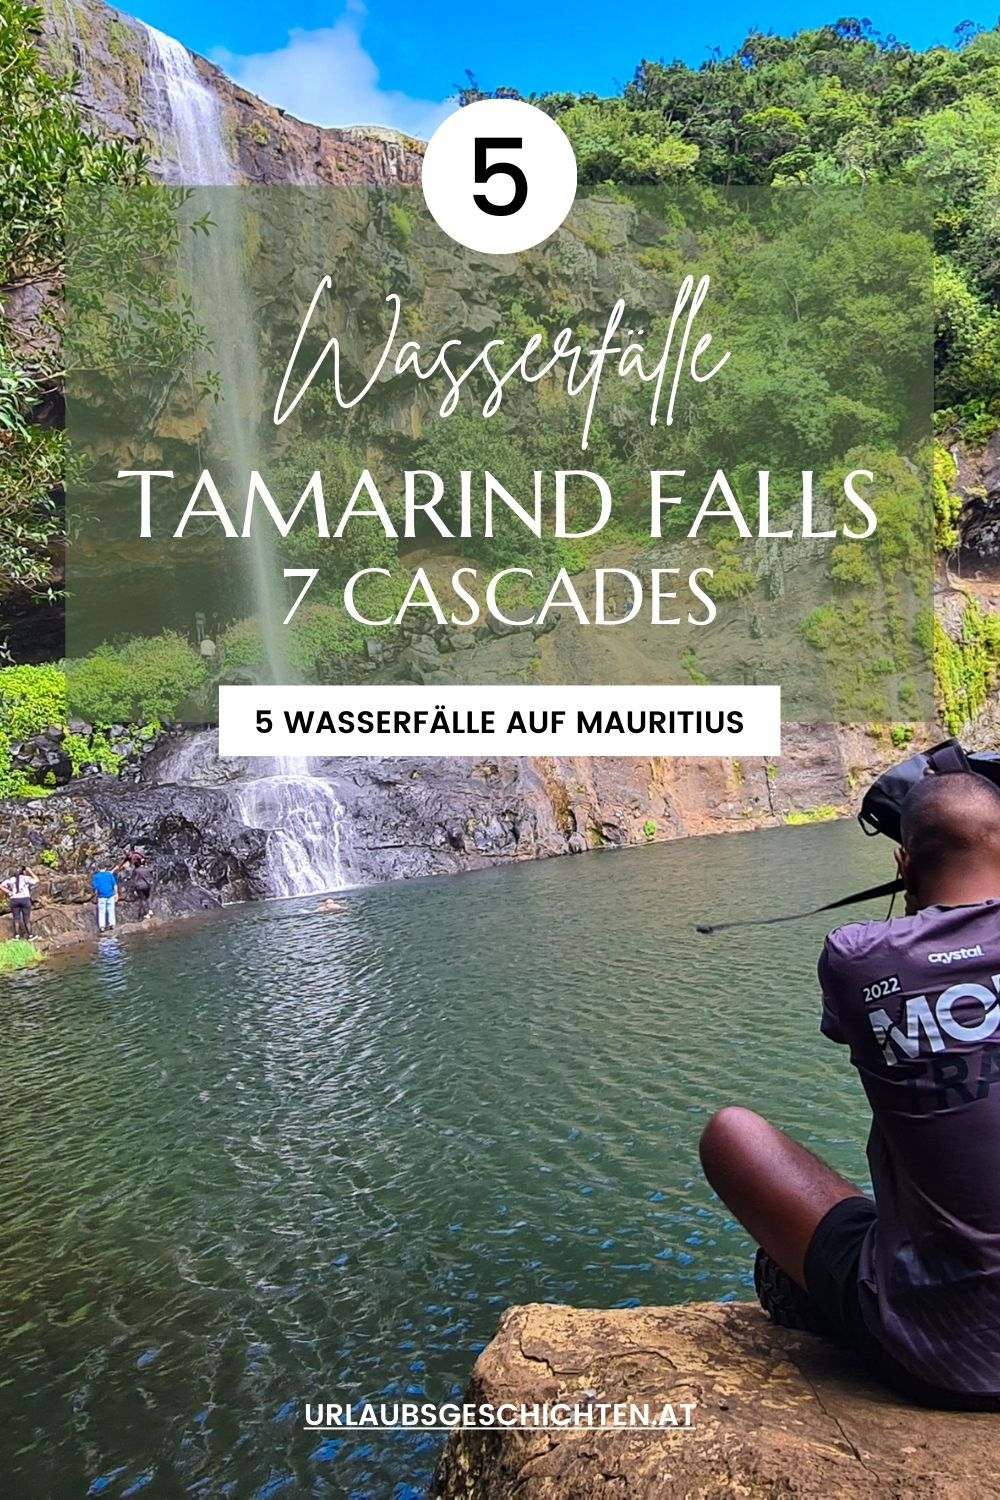 Tamarind Falls auf Pinterest merken